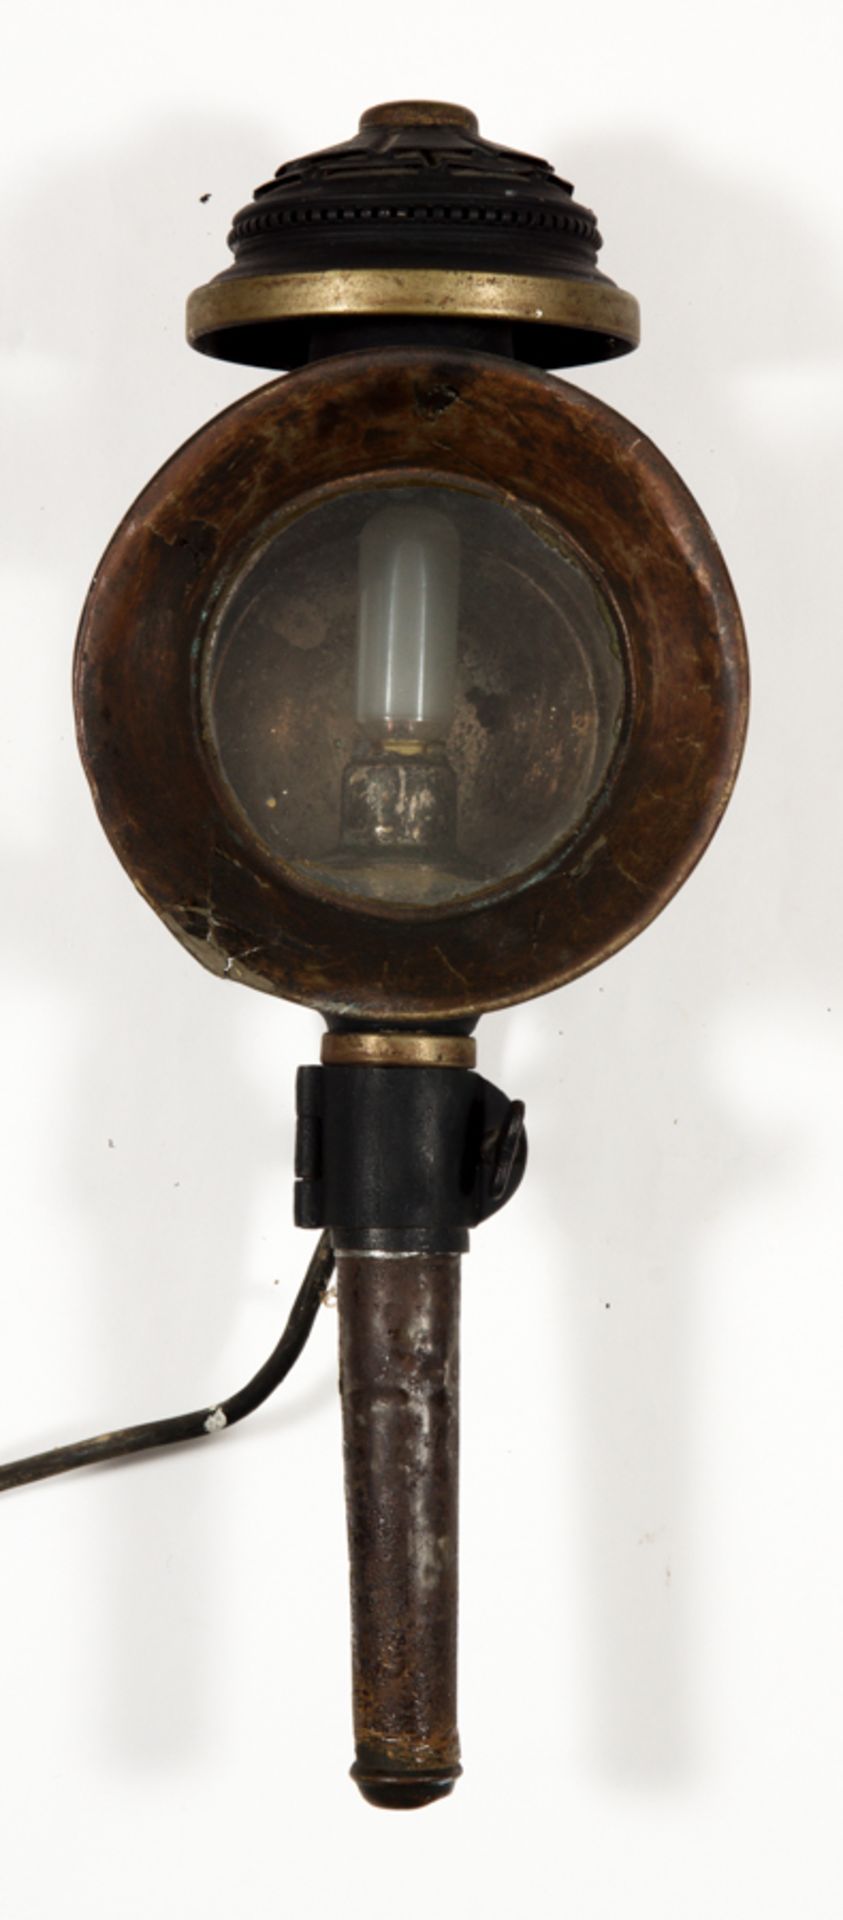 Alte oder antike Kutschlampe. Runde Form, nachträglich elektrifiziert. Ungeprüft. Teilweise